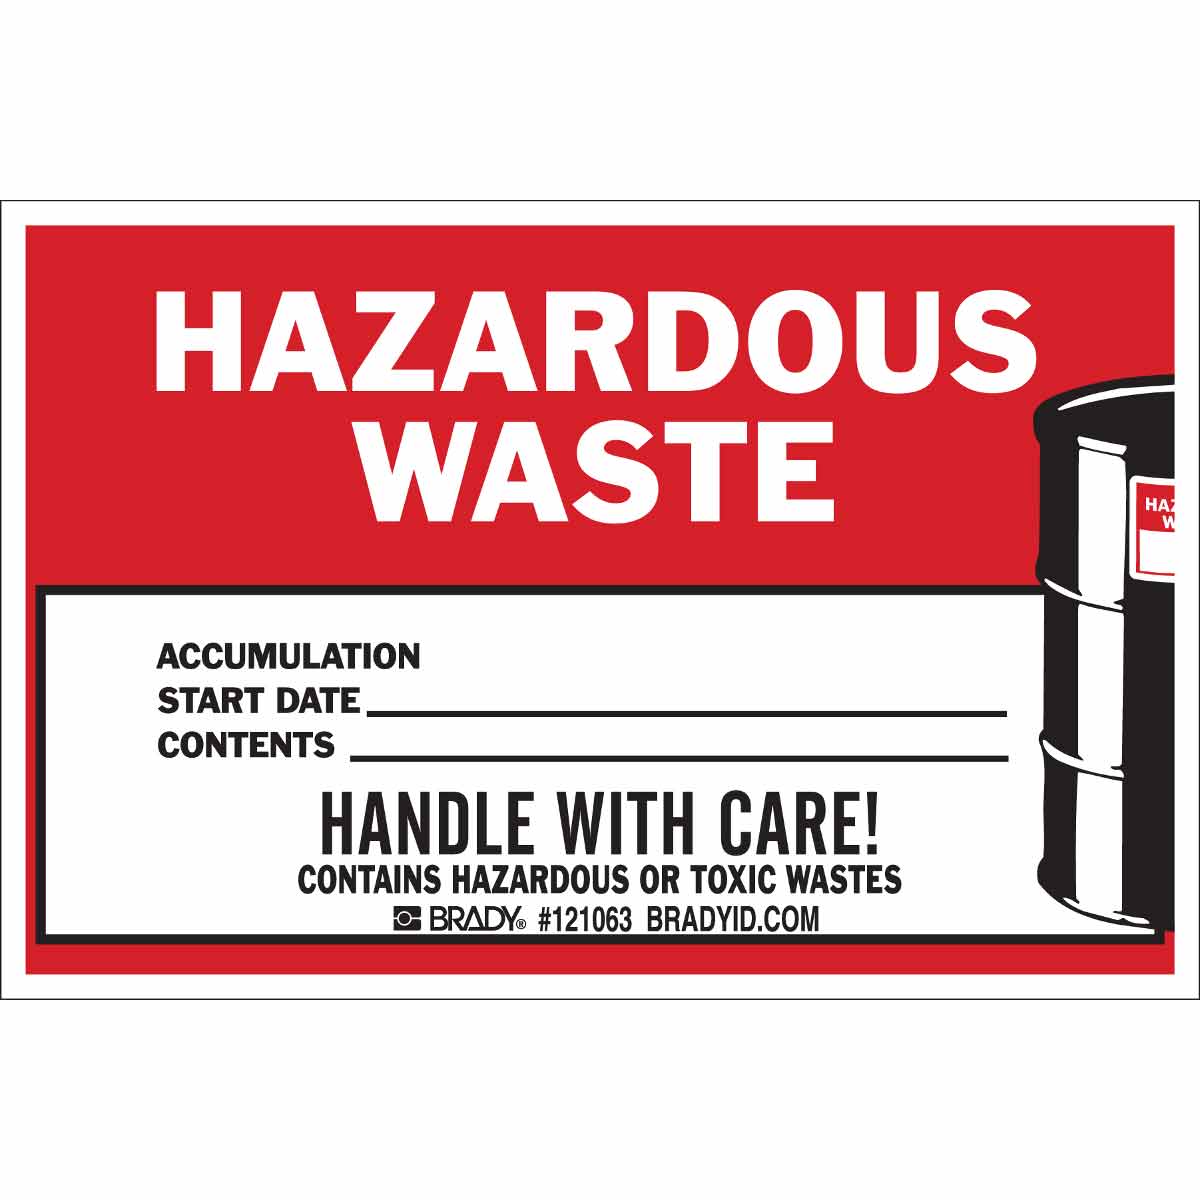 brady part 121063 hazardous waste accumulation start